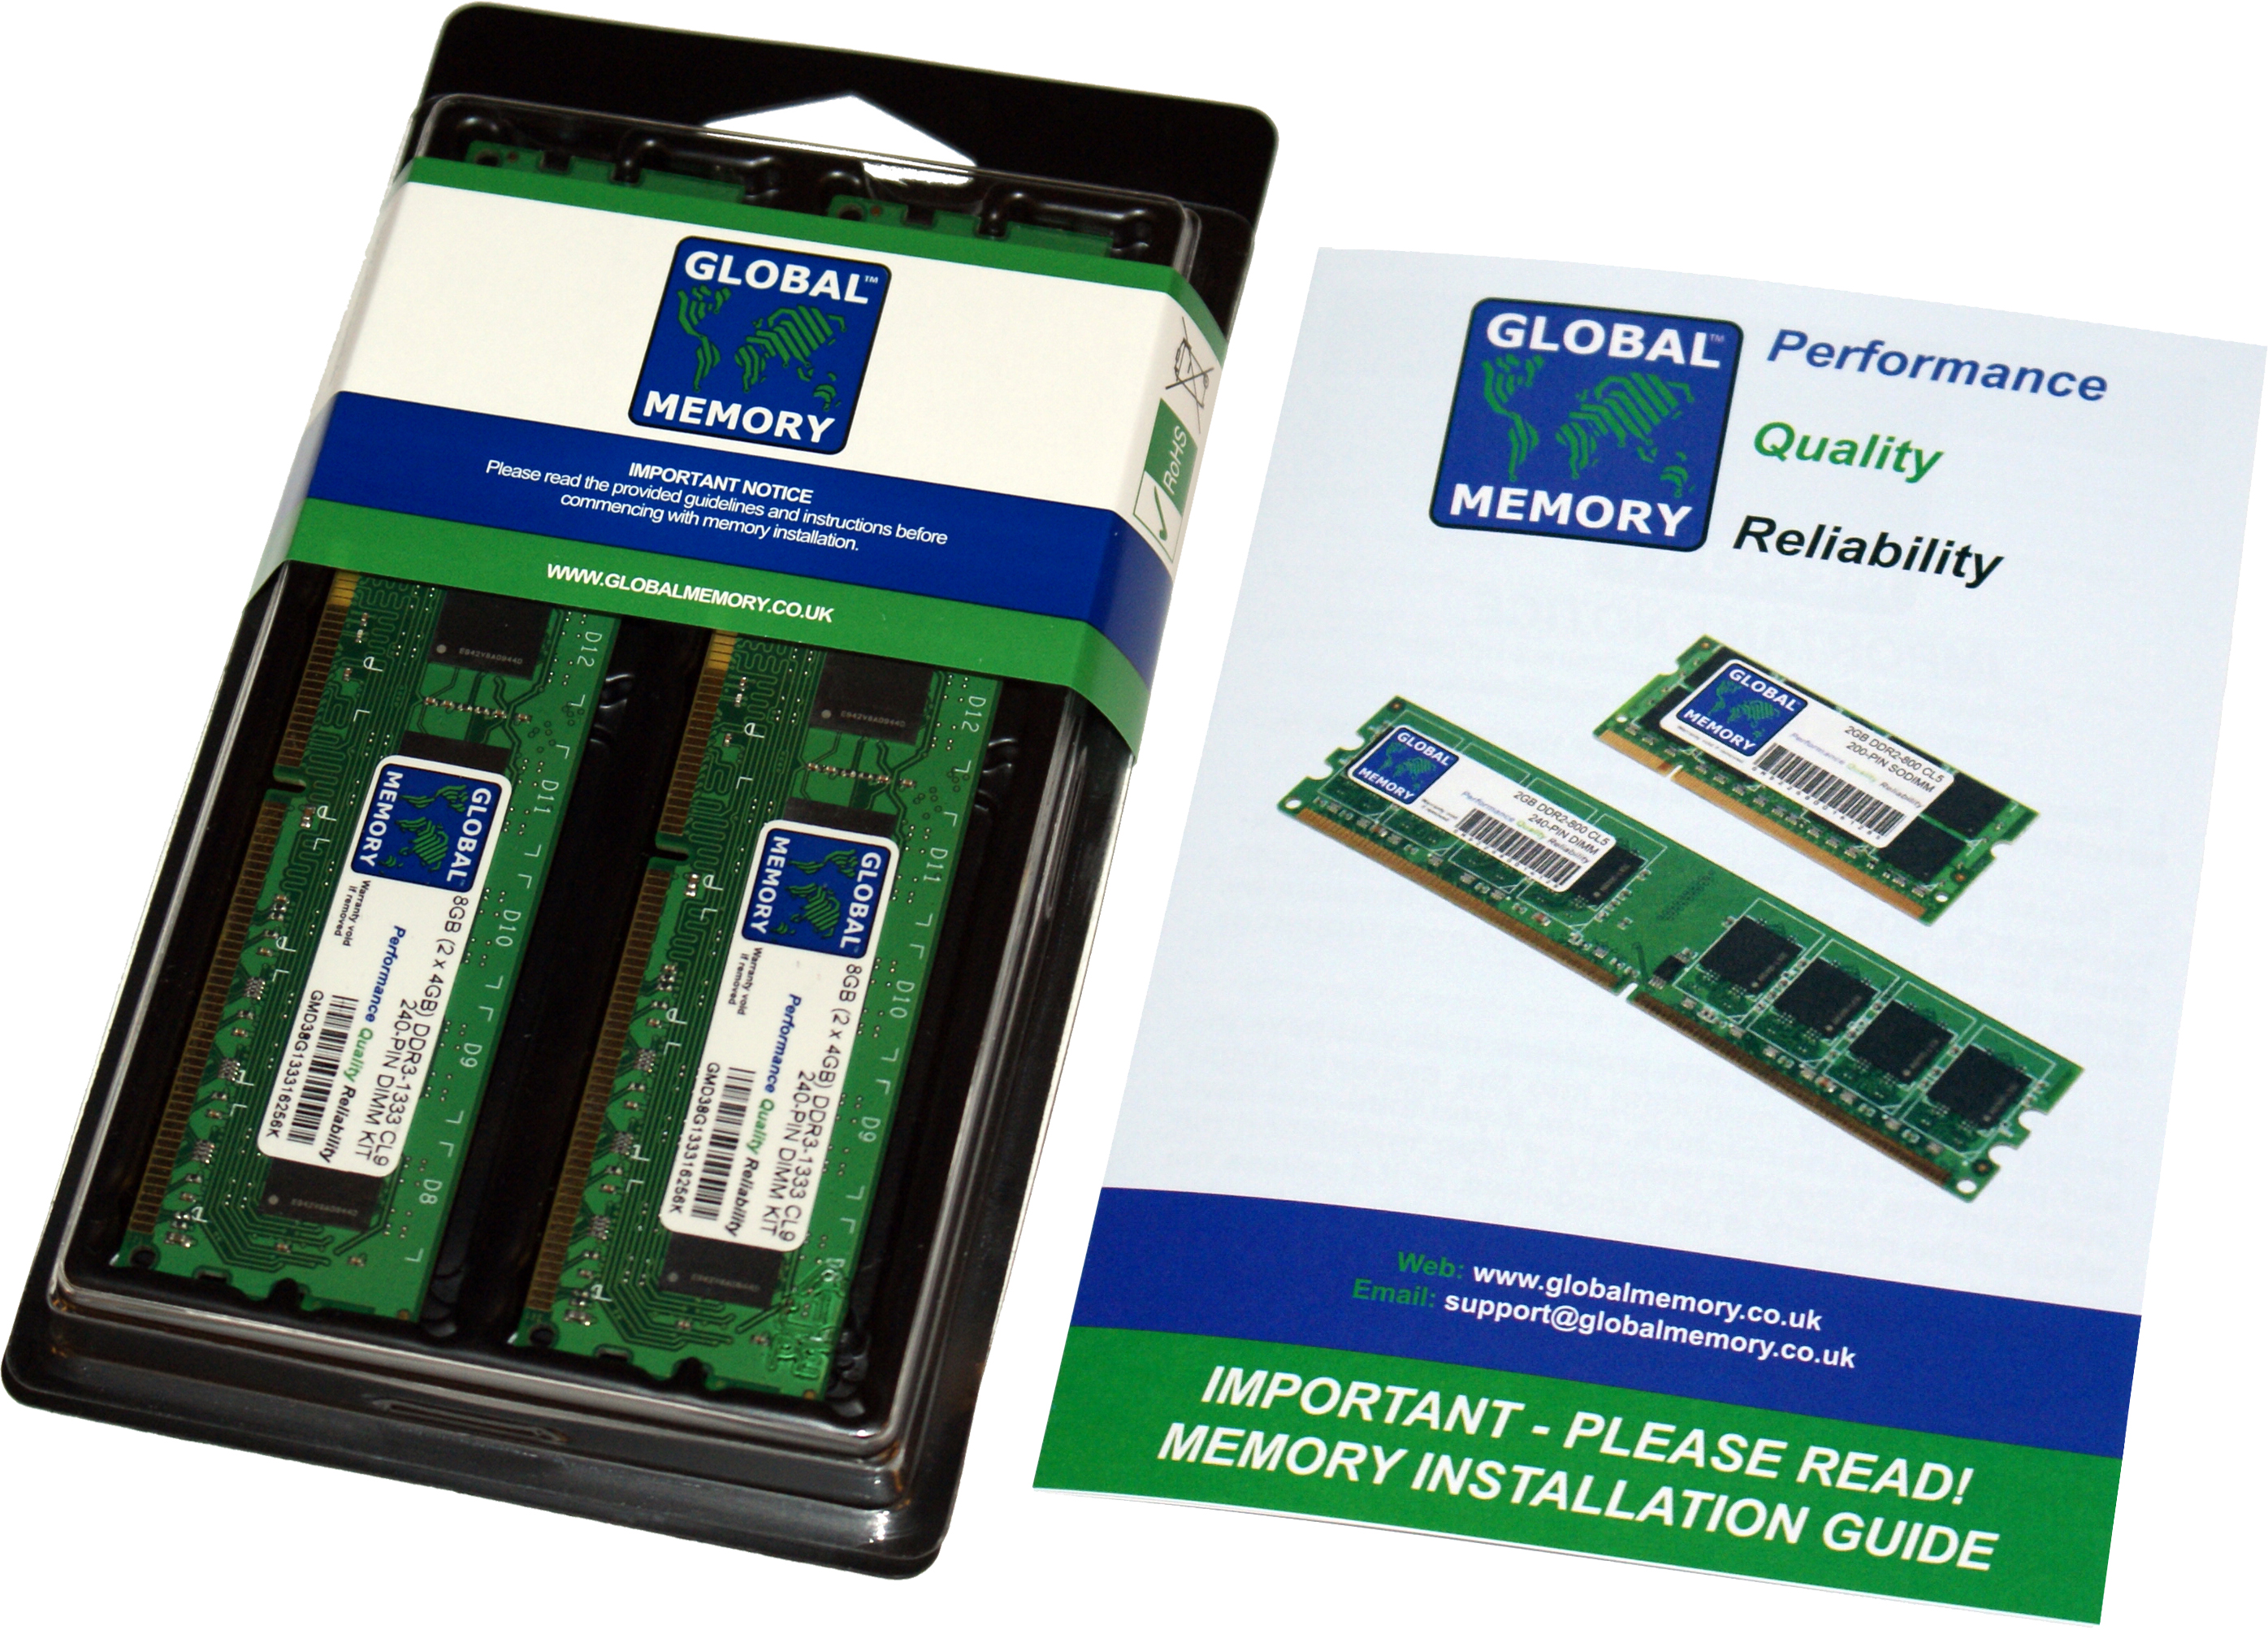 8GB (2 x 4GB) DDR4 2400MHz PC4-19200 288-PIN DIMM MEMORY RAM KIT FOR HEWLETT-PACKARD PC DESKTOPS